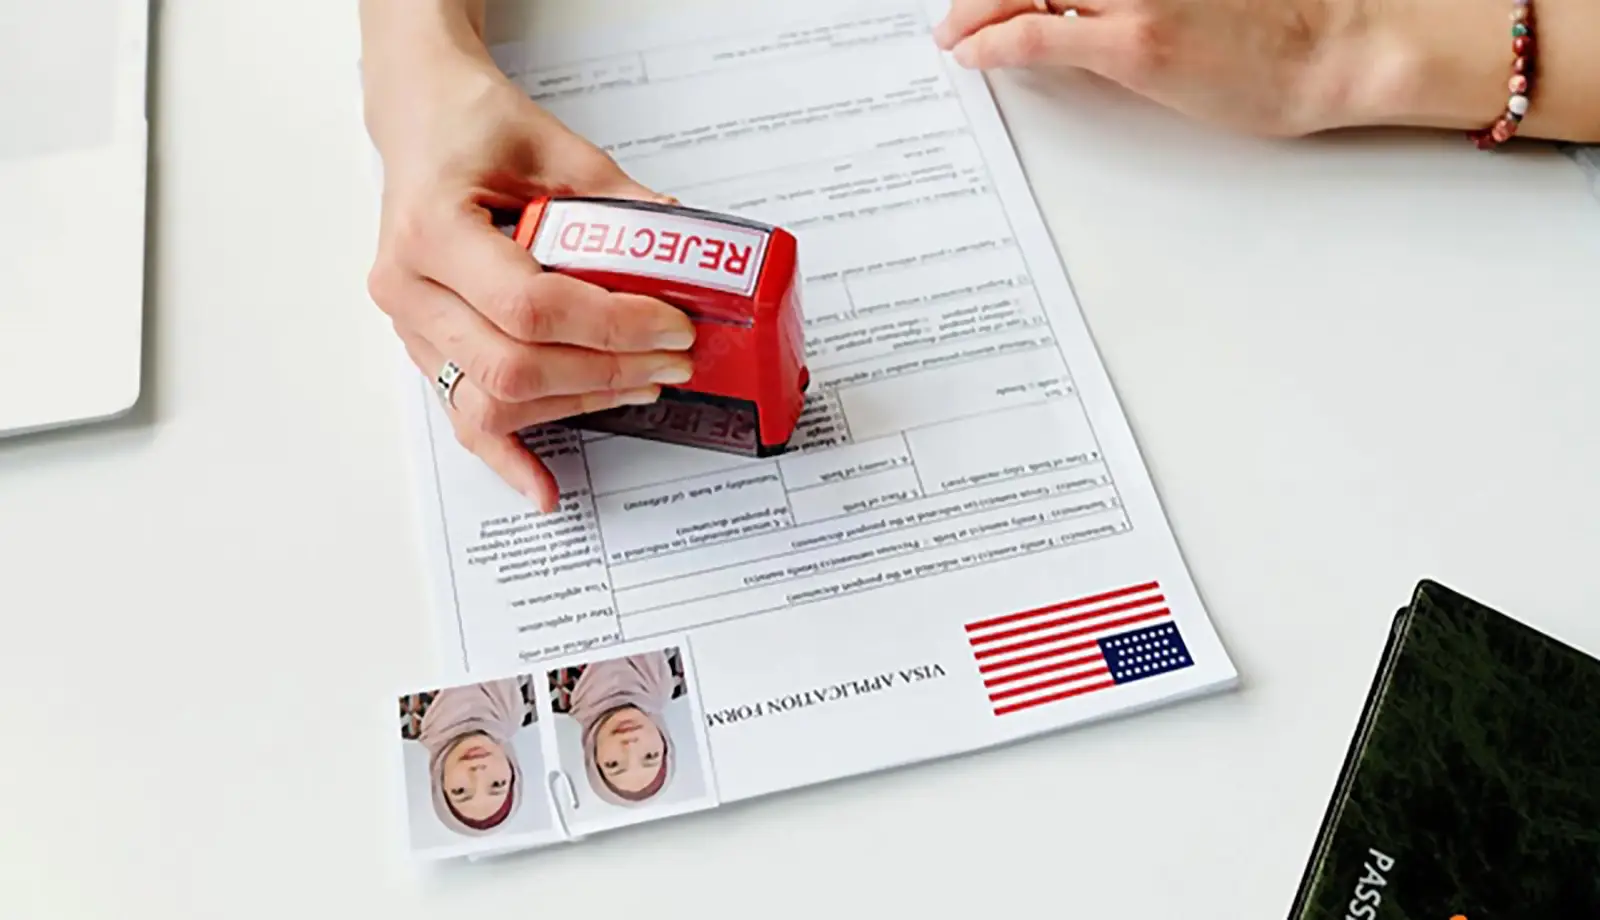 Cần cung cấp giấy từ cá nhân và học vấn khi xin Visa du học Mỹ